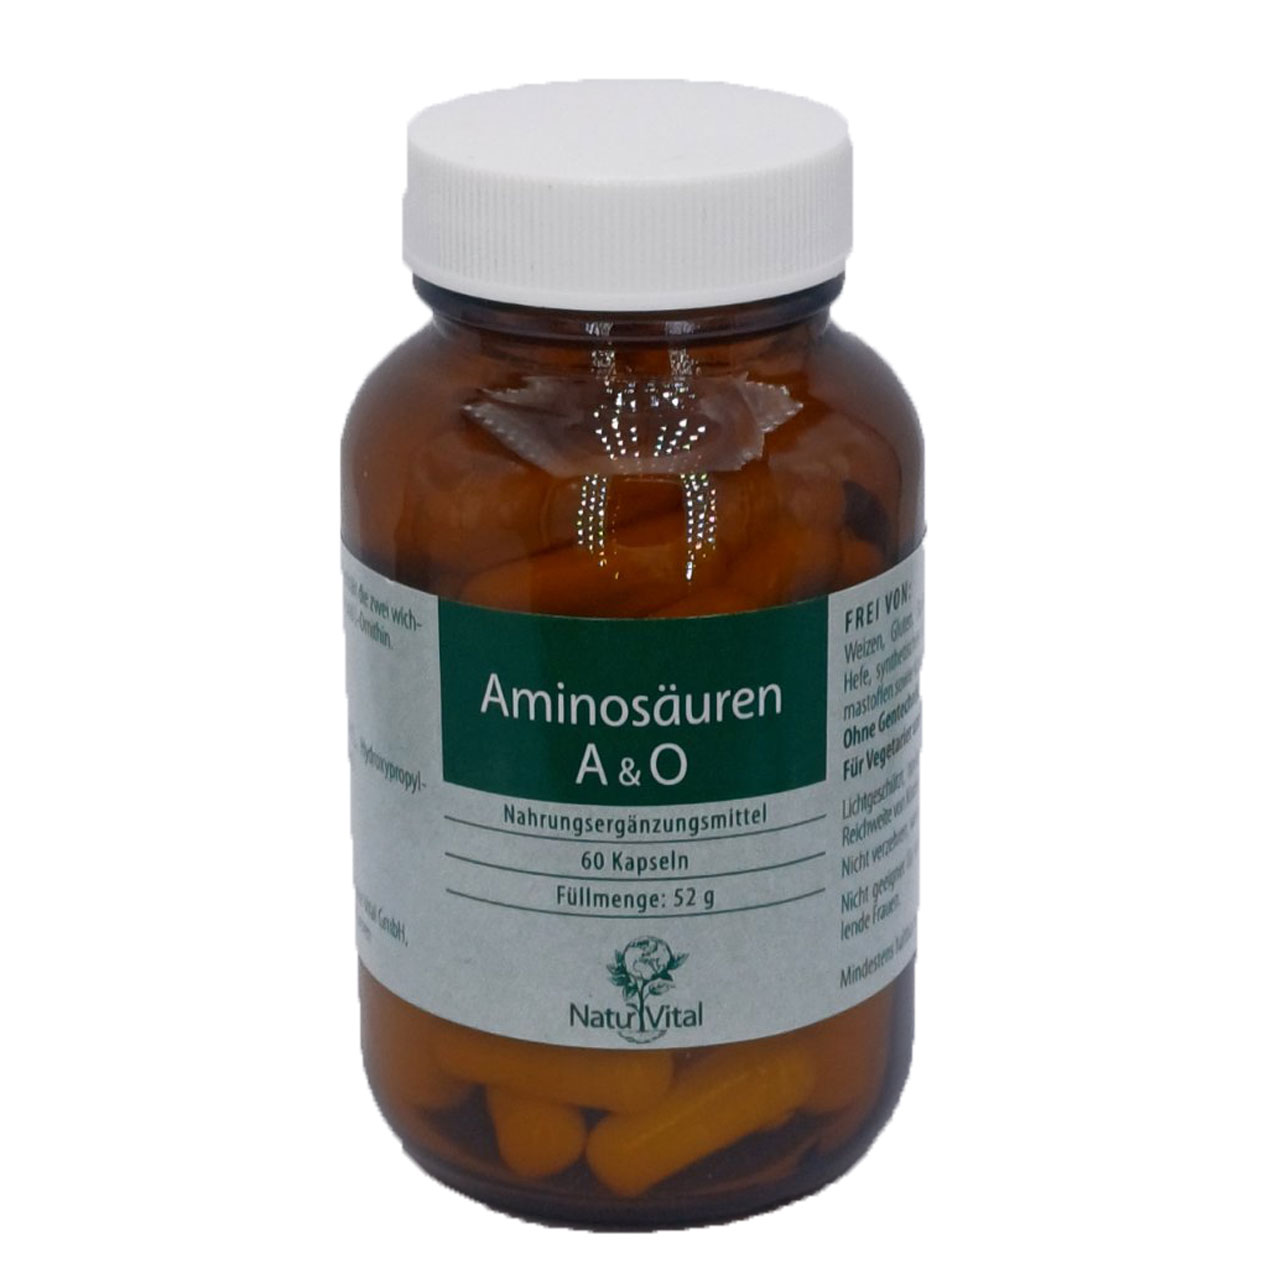 Aminosäuren A und O von Natur Vital beinhaltet 60 Kapseln